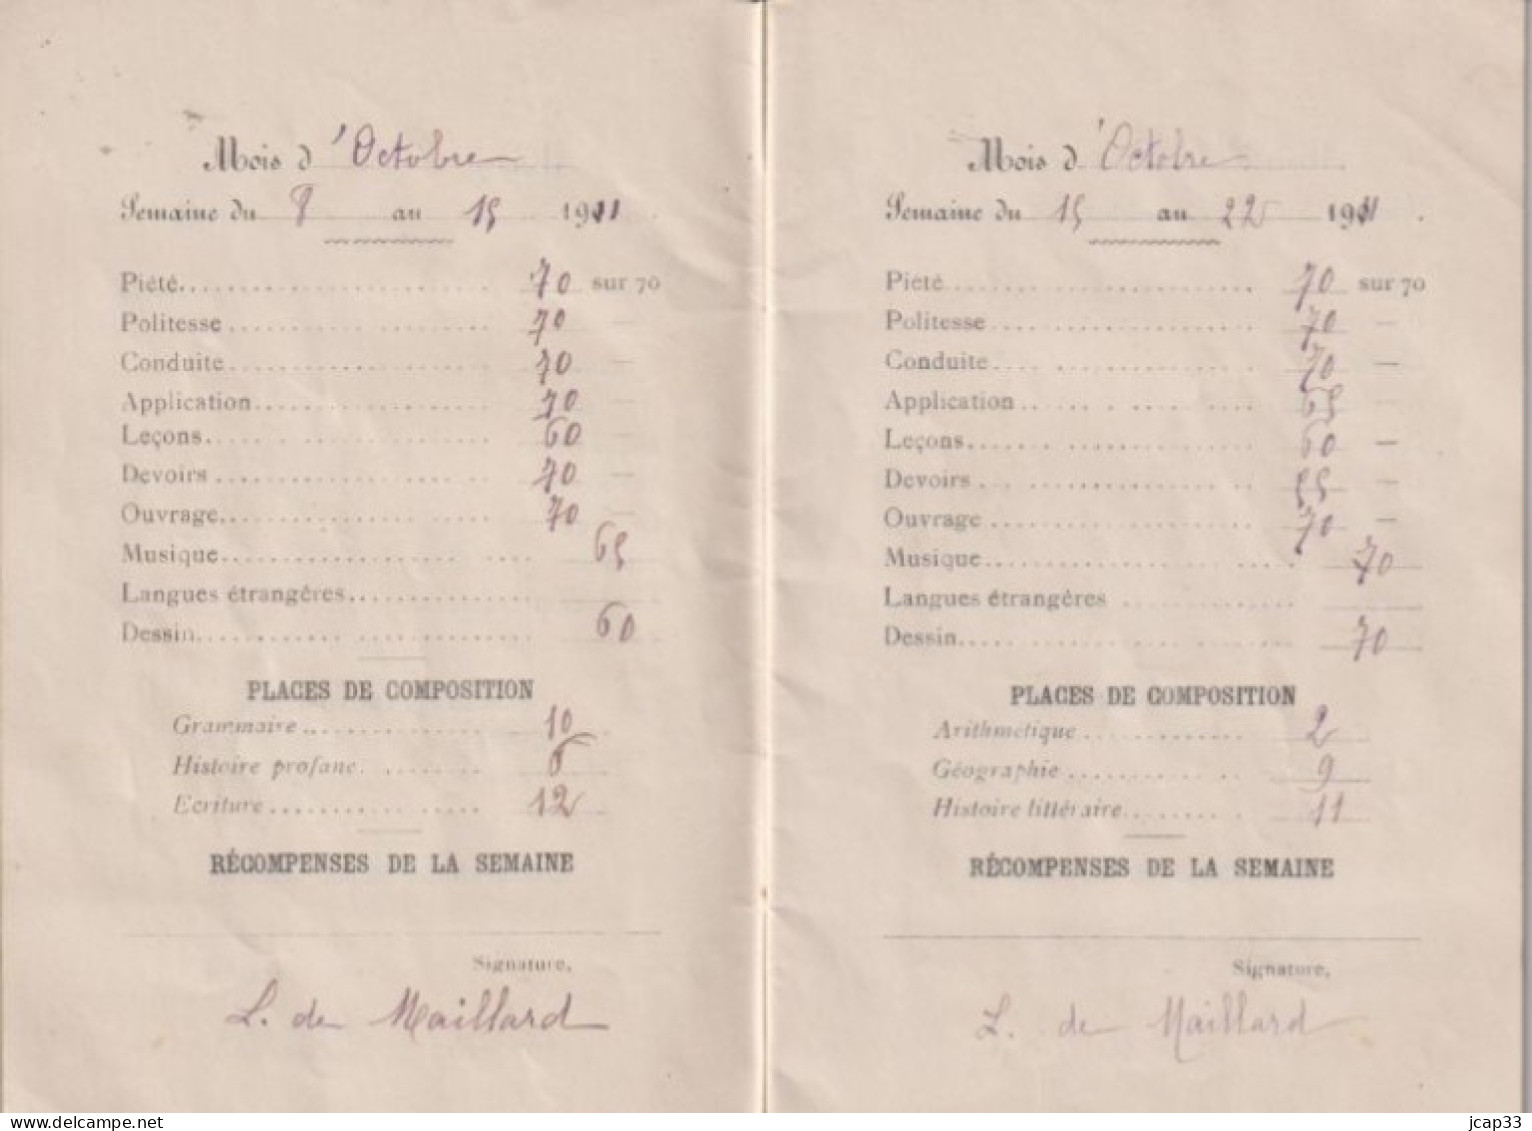 36 CHATEAUROUX  -  INSTITUTION STE SOLANGE 45 Avenue De La Gare  -  LIVRET SCOLAIRE  -  1911  - - Diplome Und Schulzeugnisse